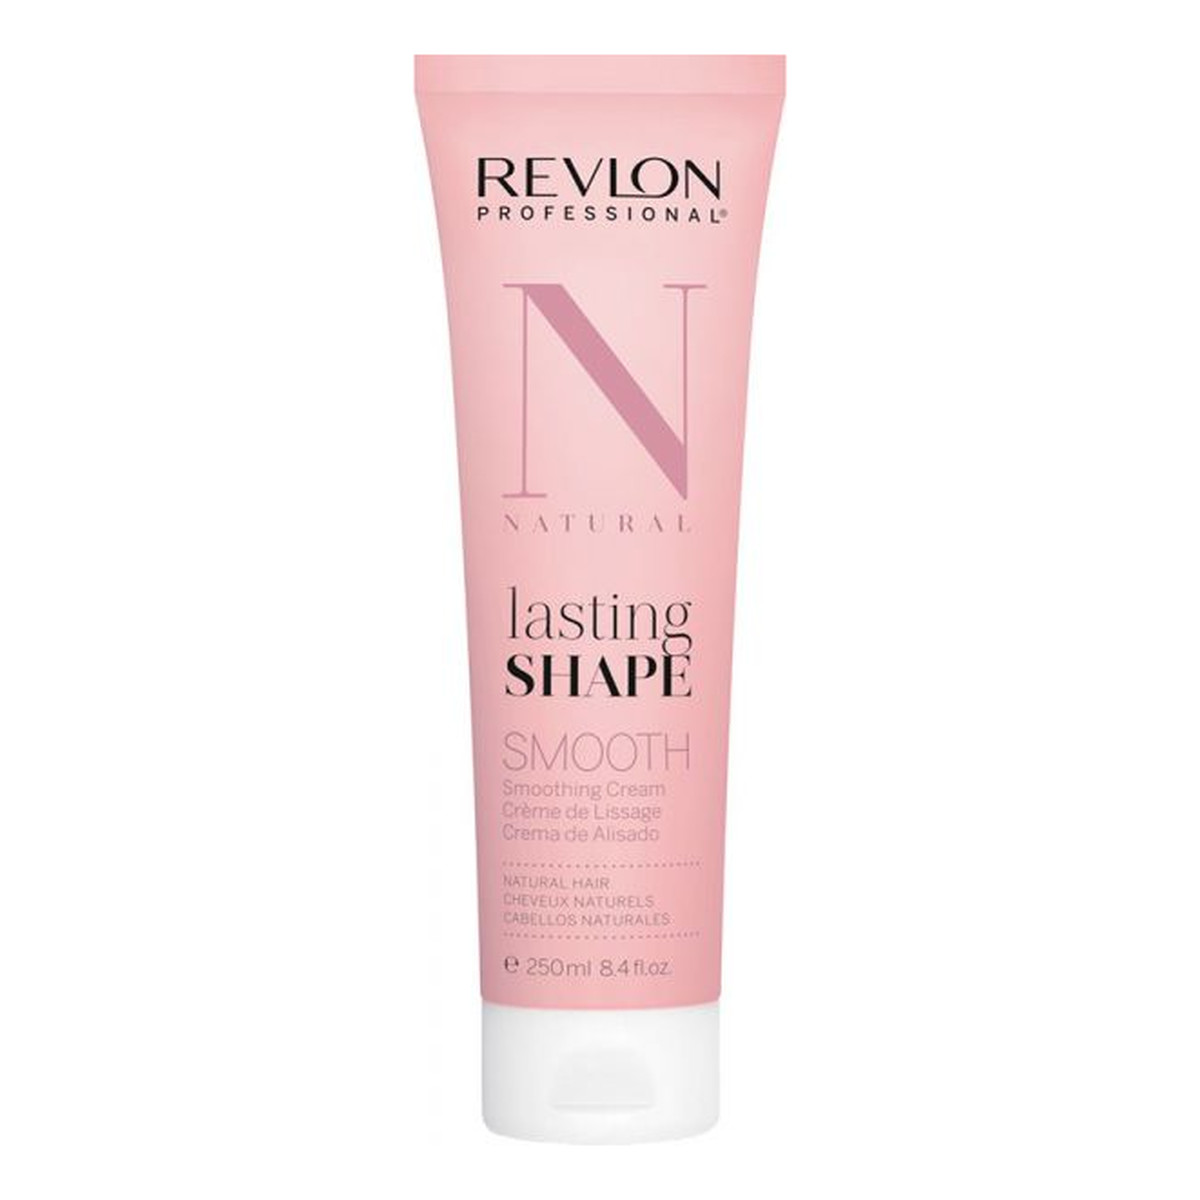 Revlon Lasting Shape Smooth krem do prostowania włosów naturalnych 250ml